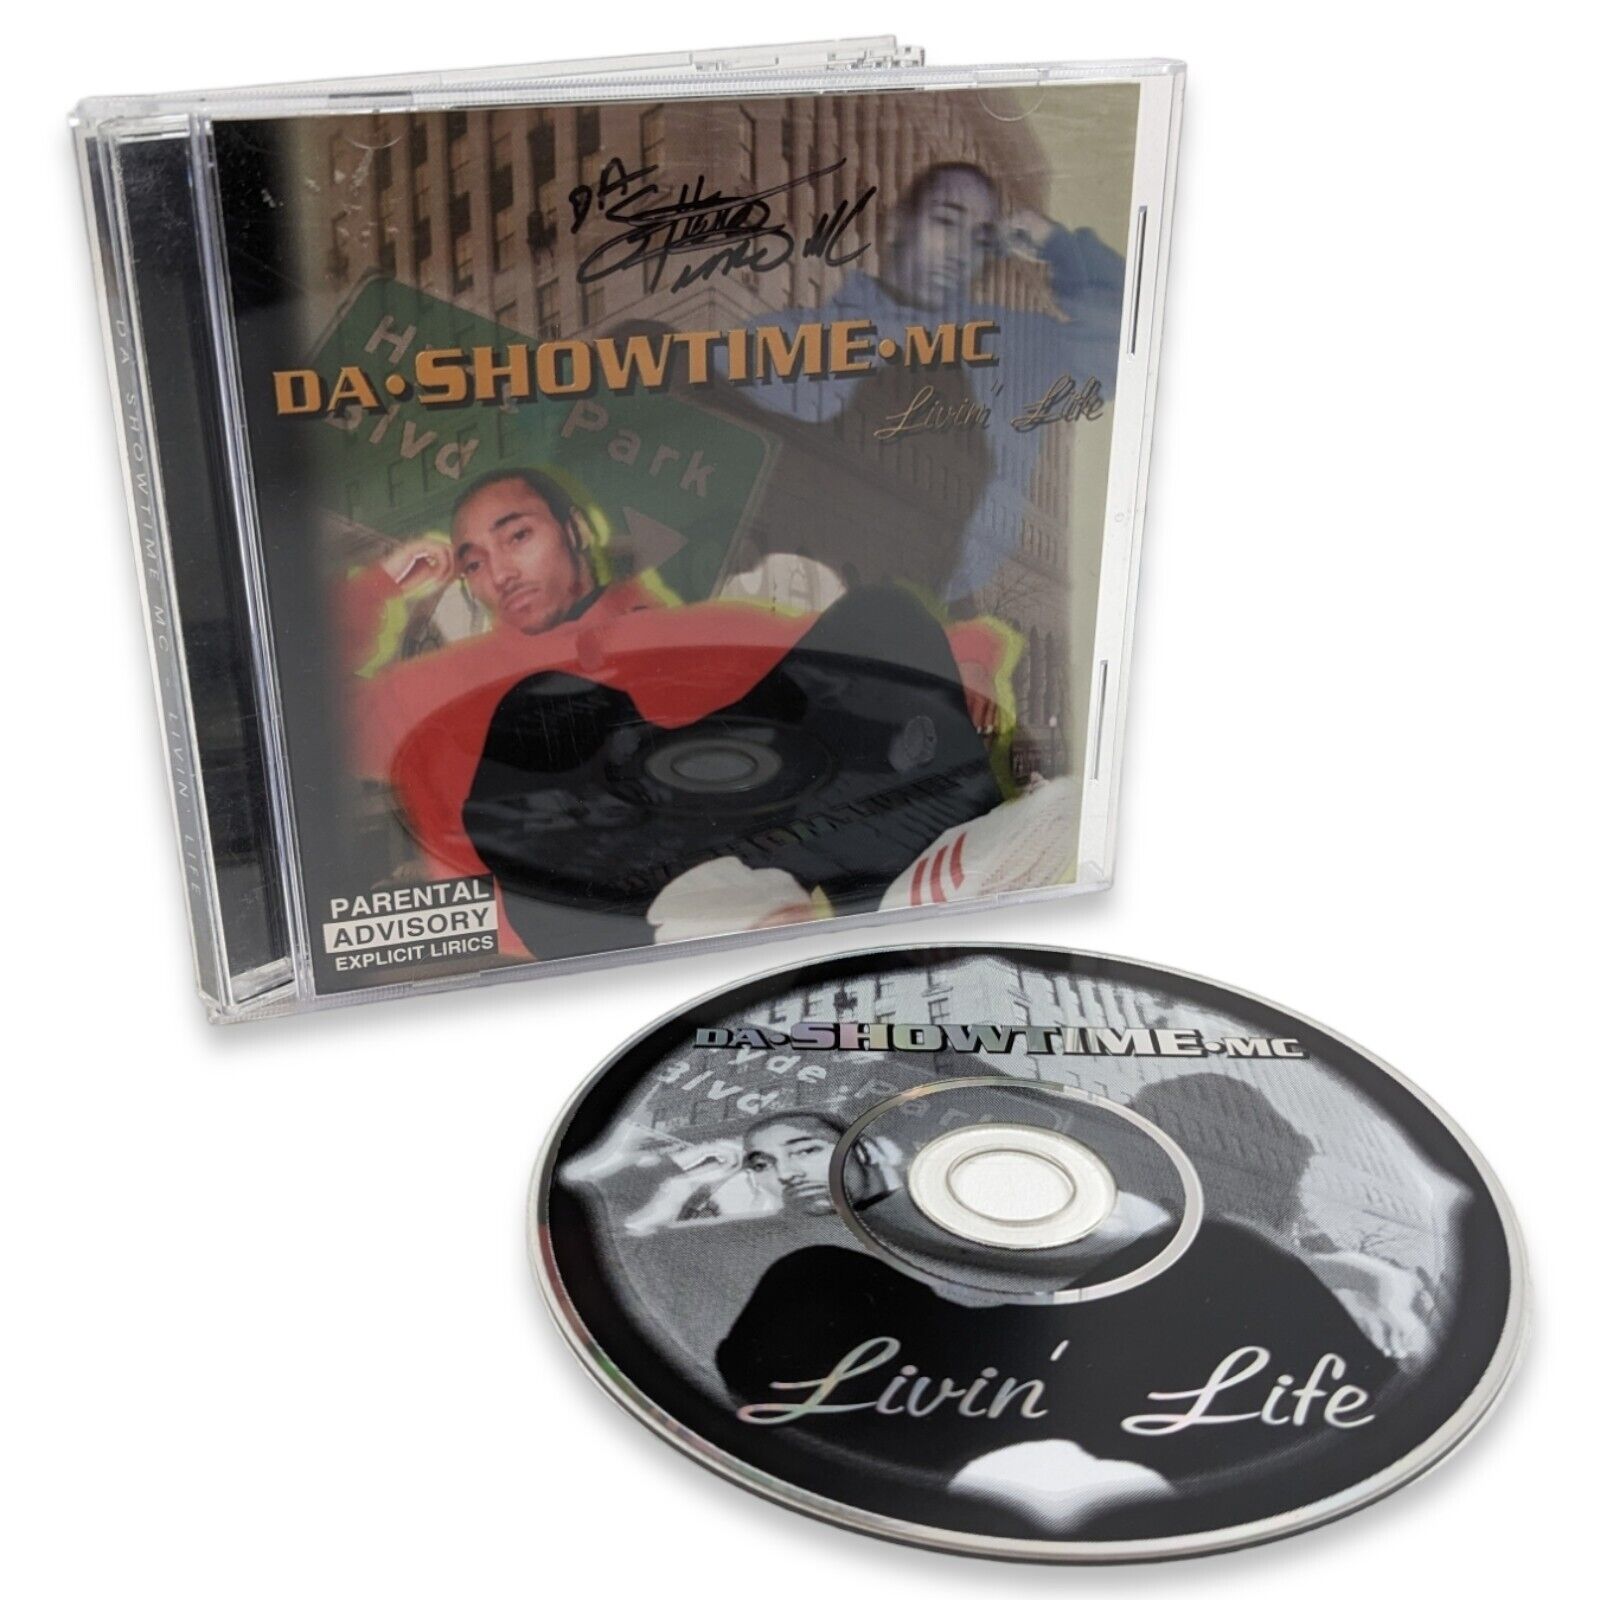 Da Showtime MC - Livin\' Life (CD, 1997) Rare SIGNED AUTOGRAPH Chicago Rap Album